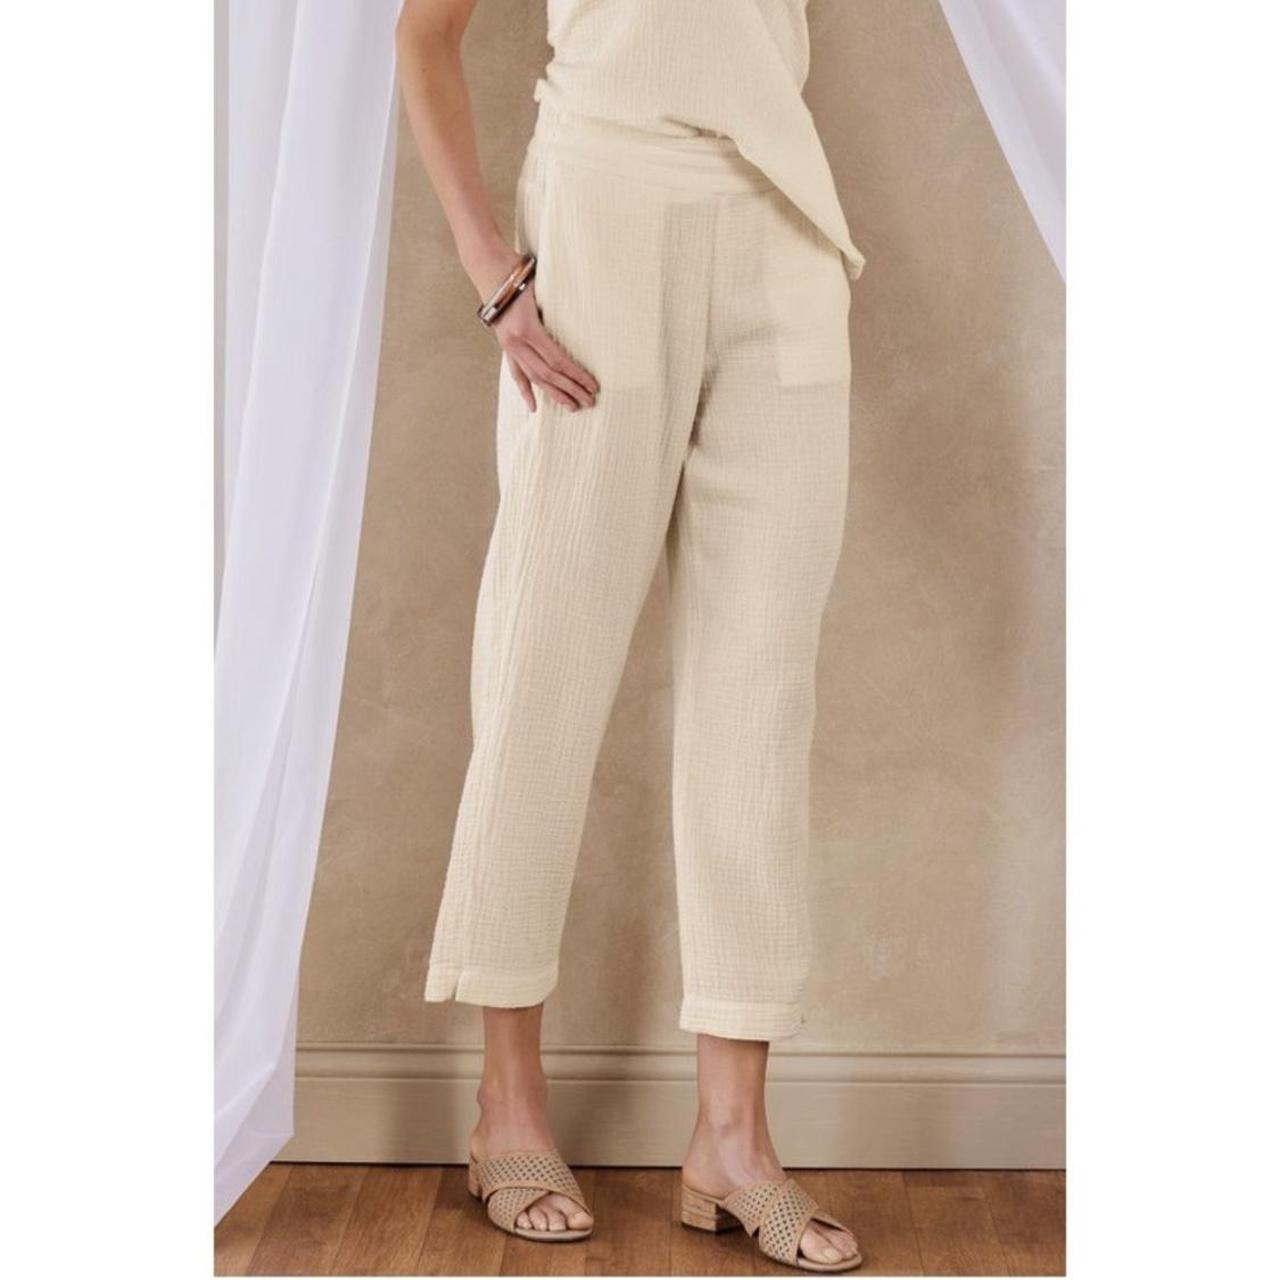 Soft Surroundings Women's Black Pull on 100% Linen Pants Elastic Waist 